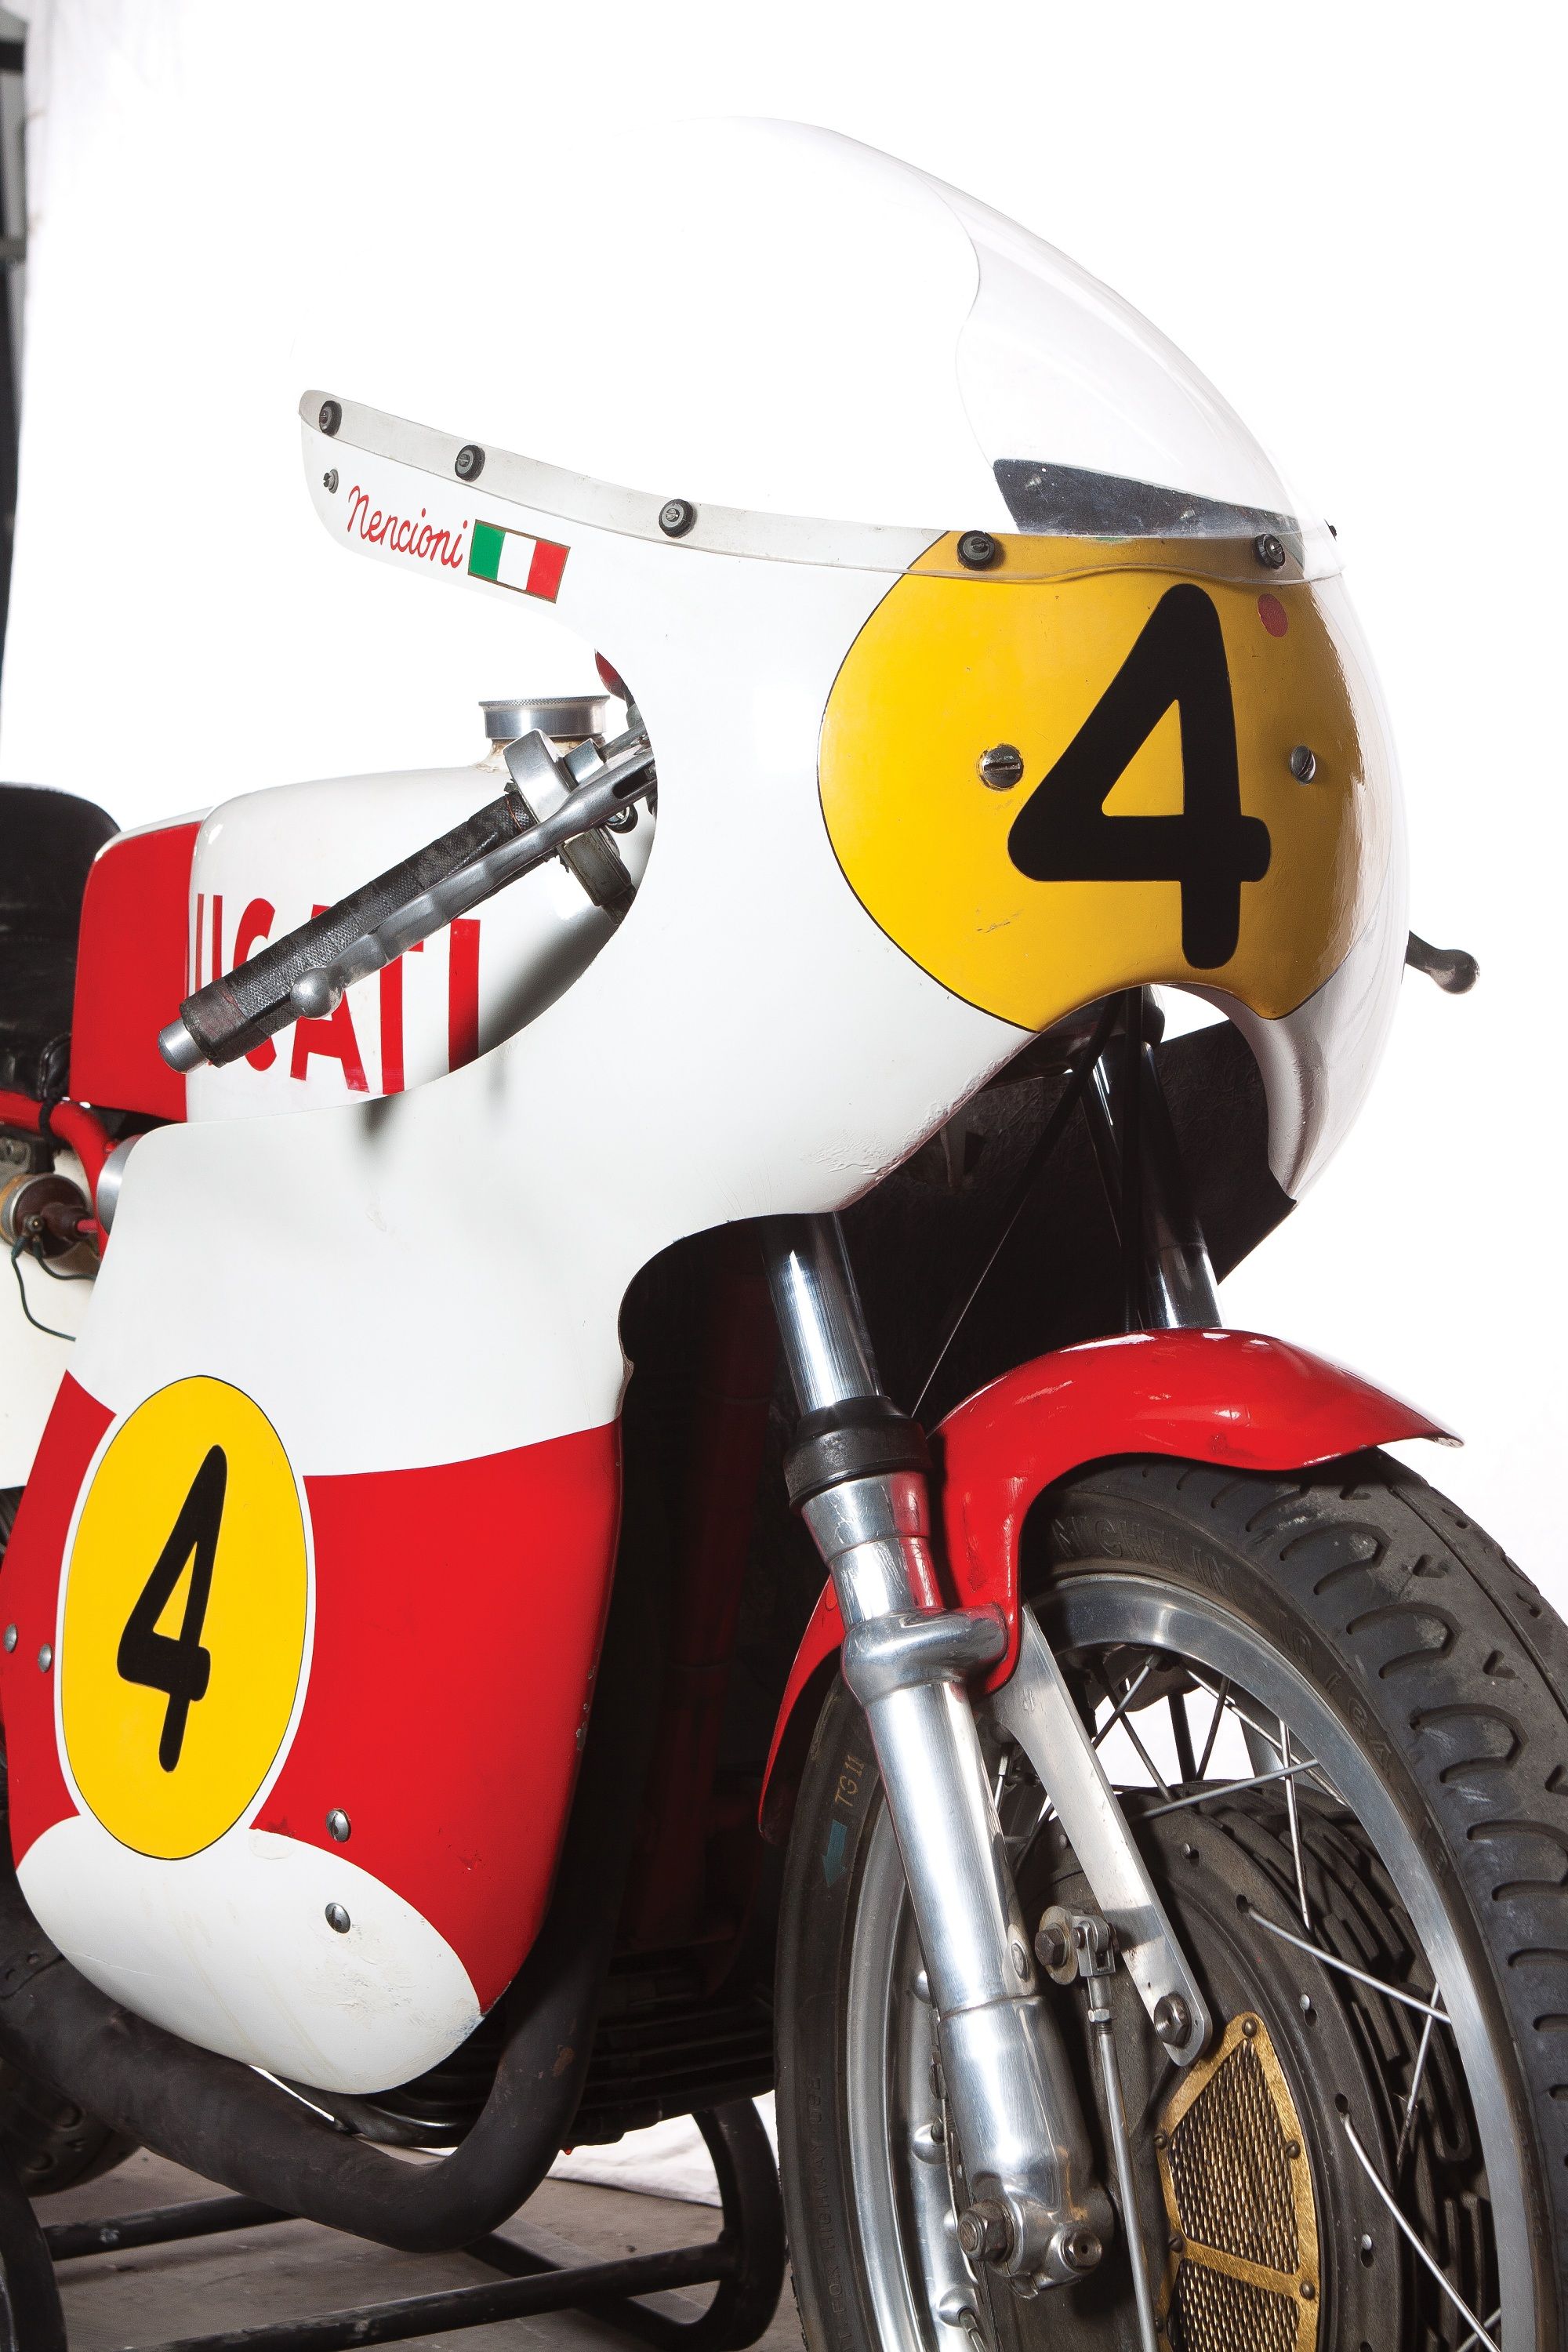 1970 Ducati 450 Desmo Corsa